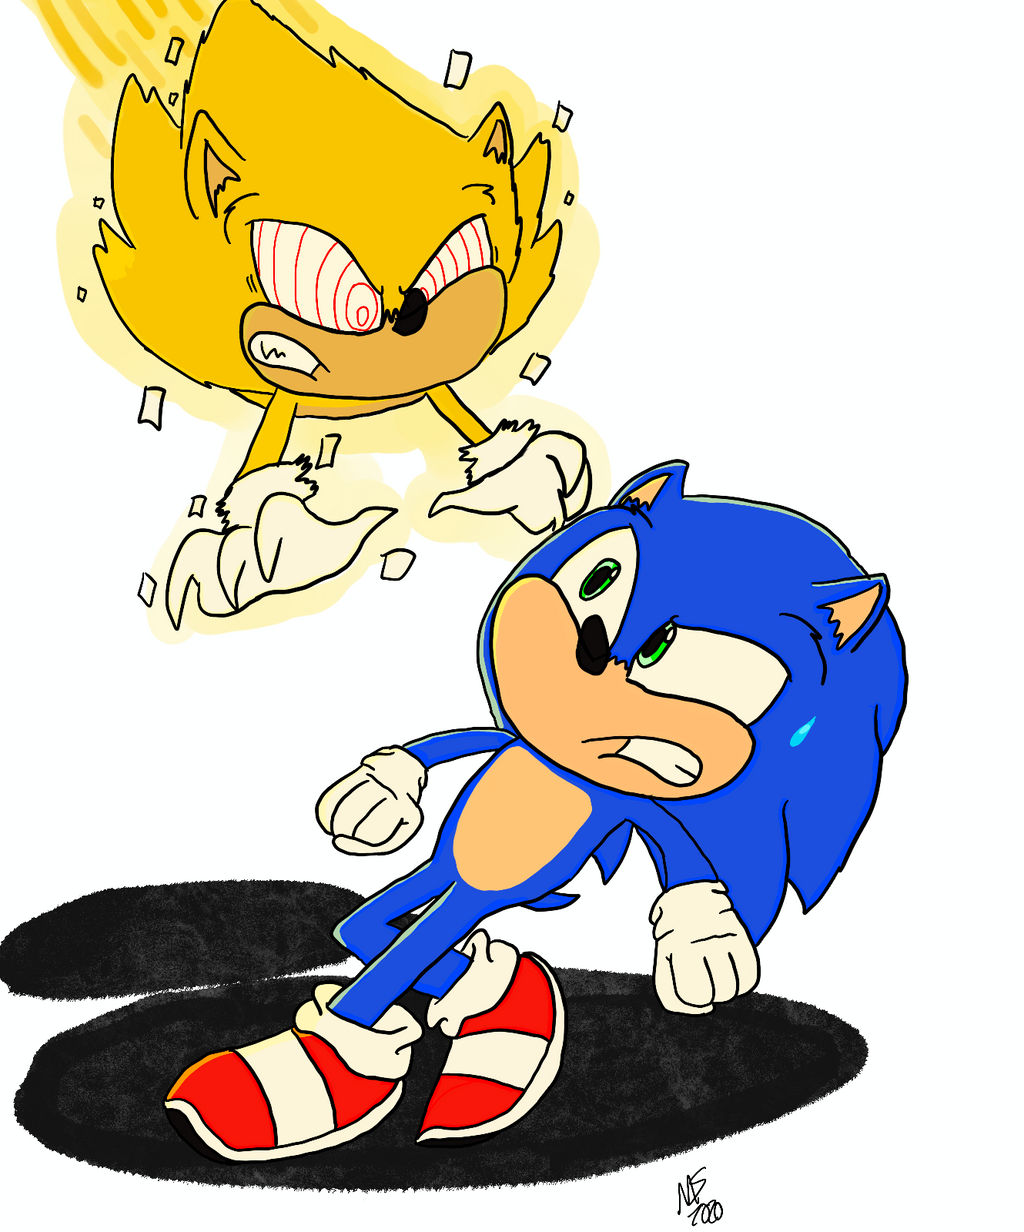 Super Sonic vs Hyper Sonic by leifii on DeviantArt. : r